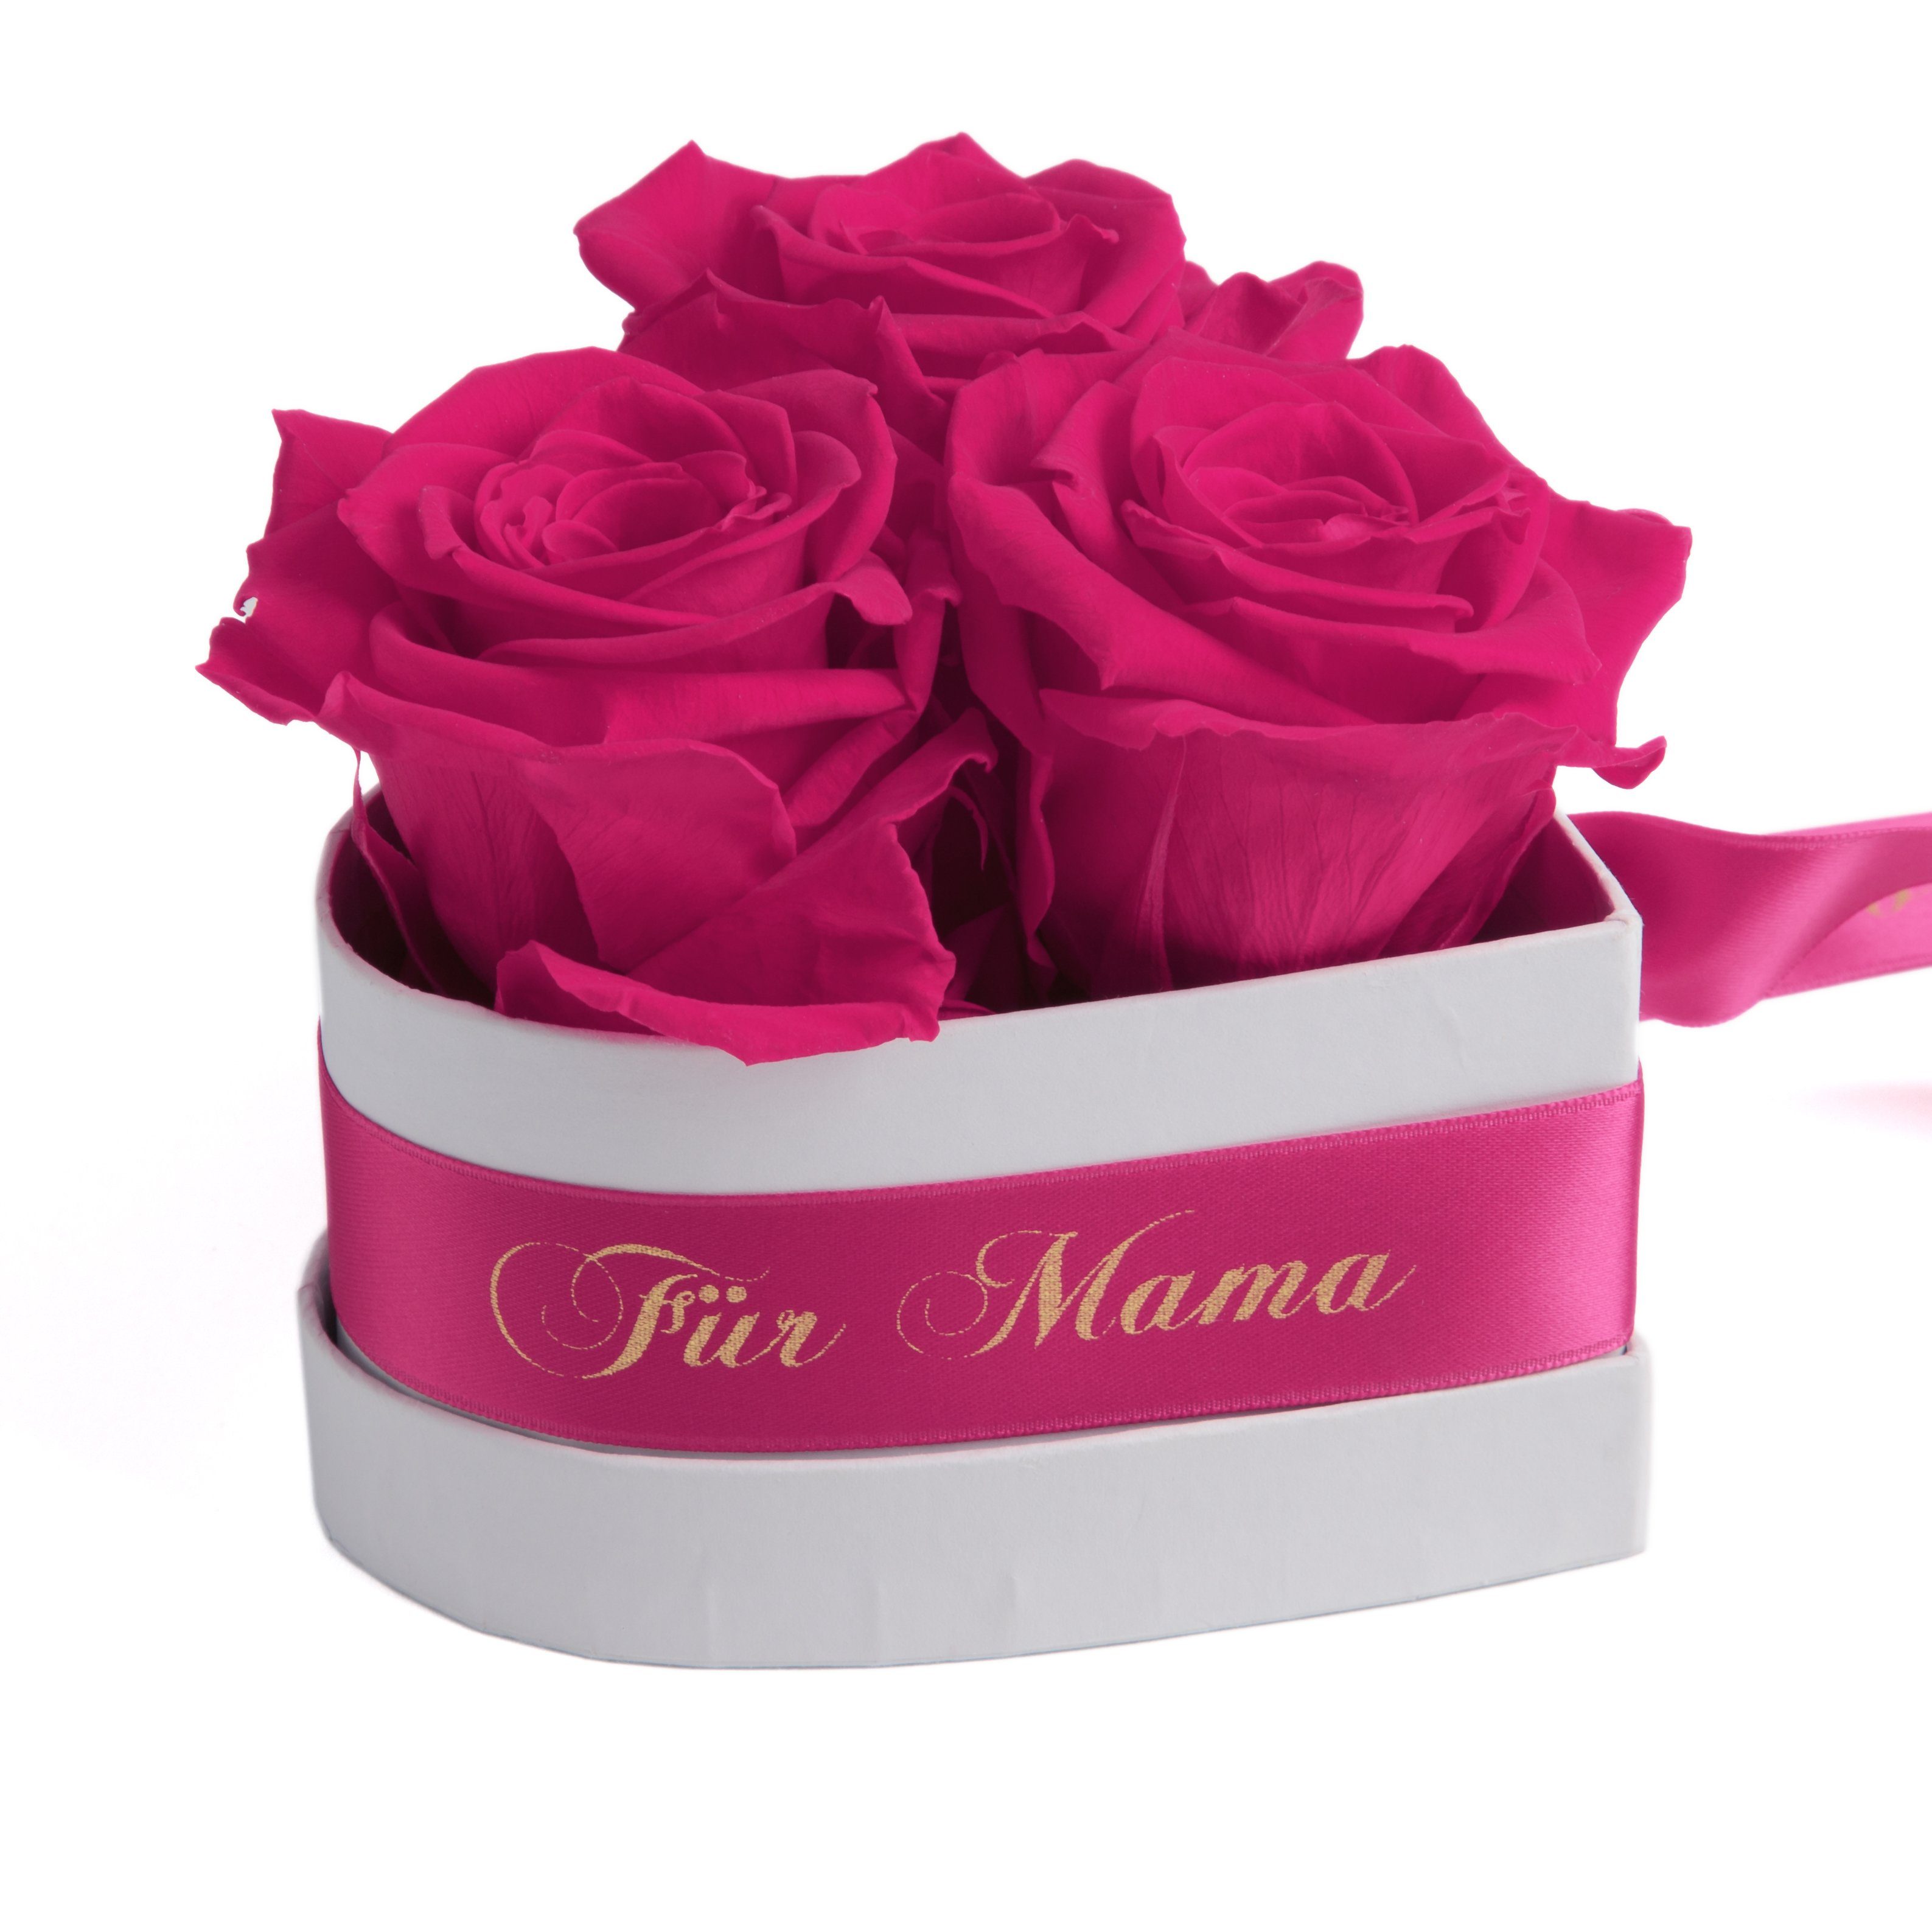 Infinity Rosenbox Blumenbox echte Rose GRAVUR Hochzeitstag Jahrestag Geschenk 